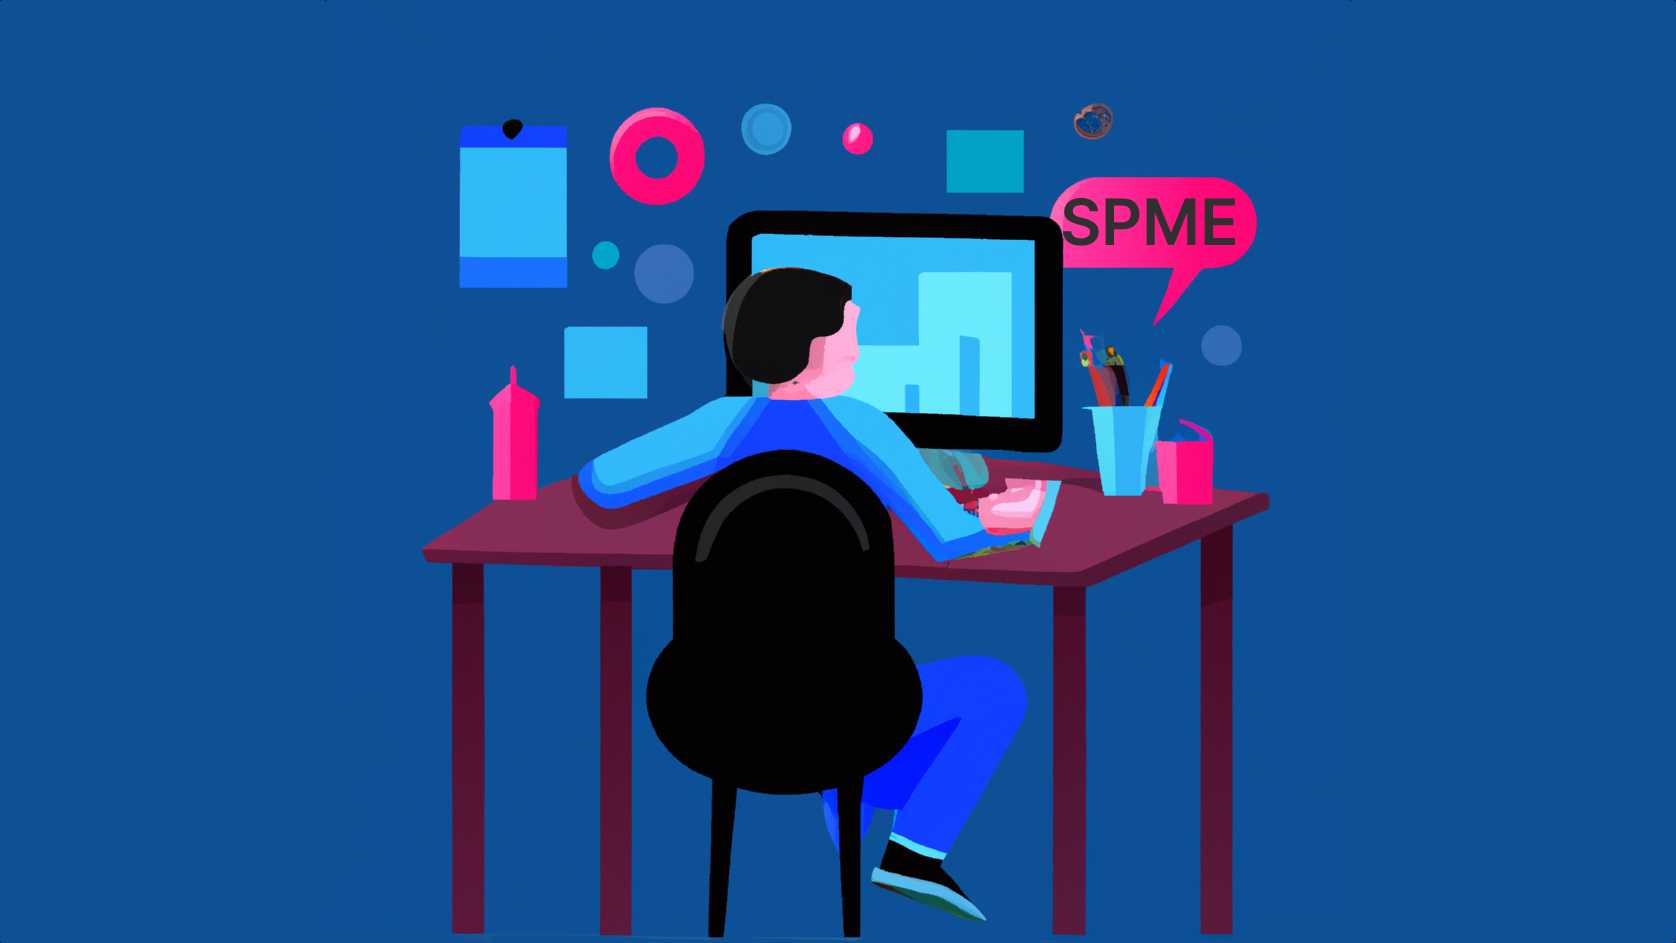 The SPME habit helps busy solopreneurs